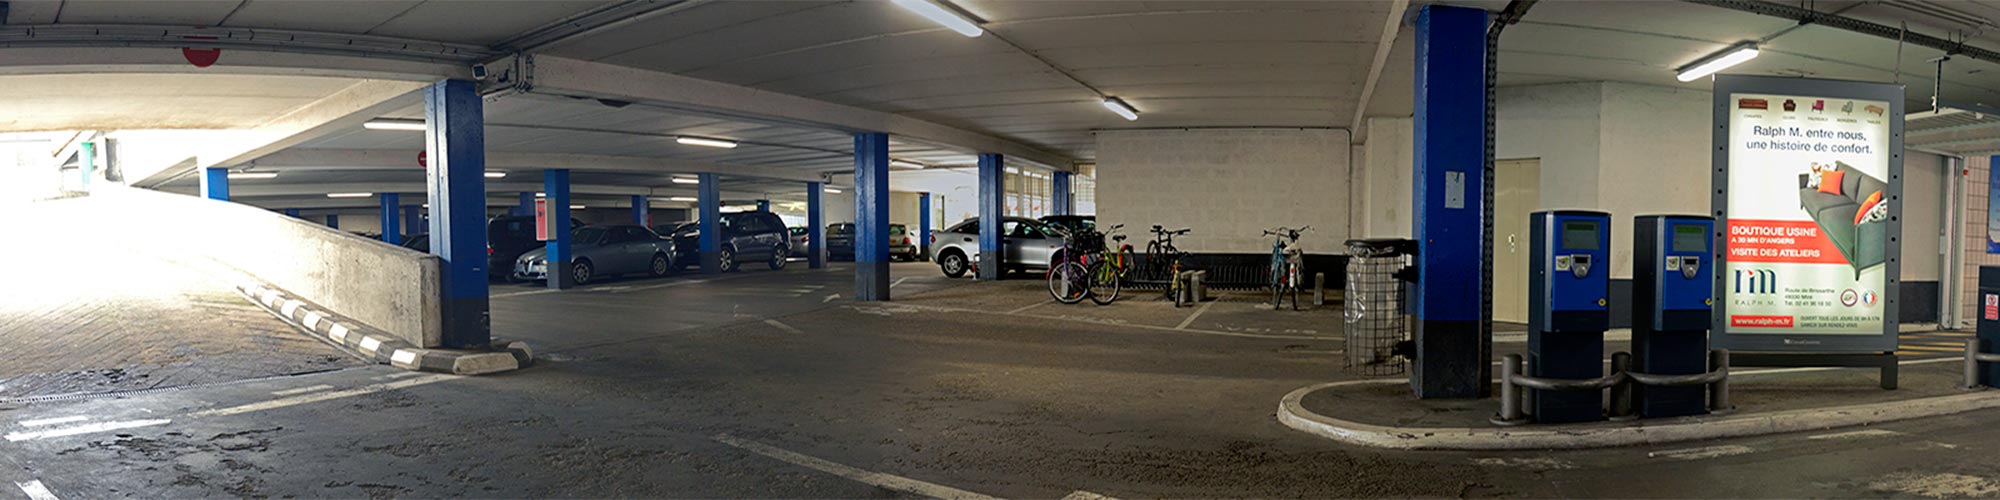 parking-bressigny